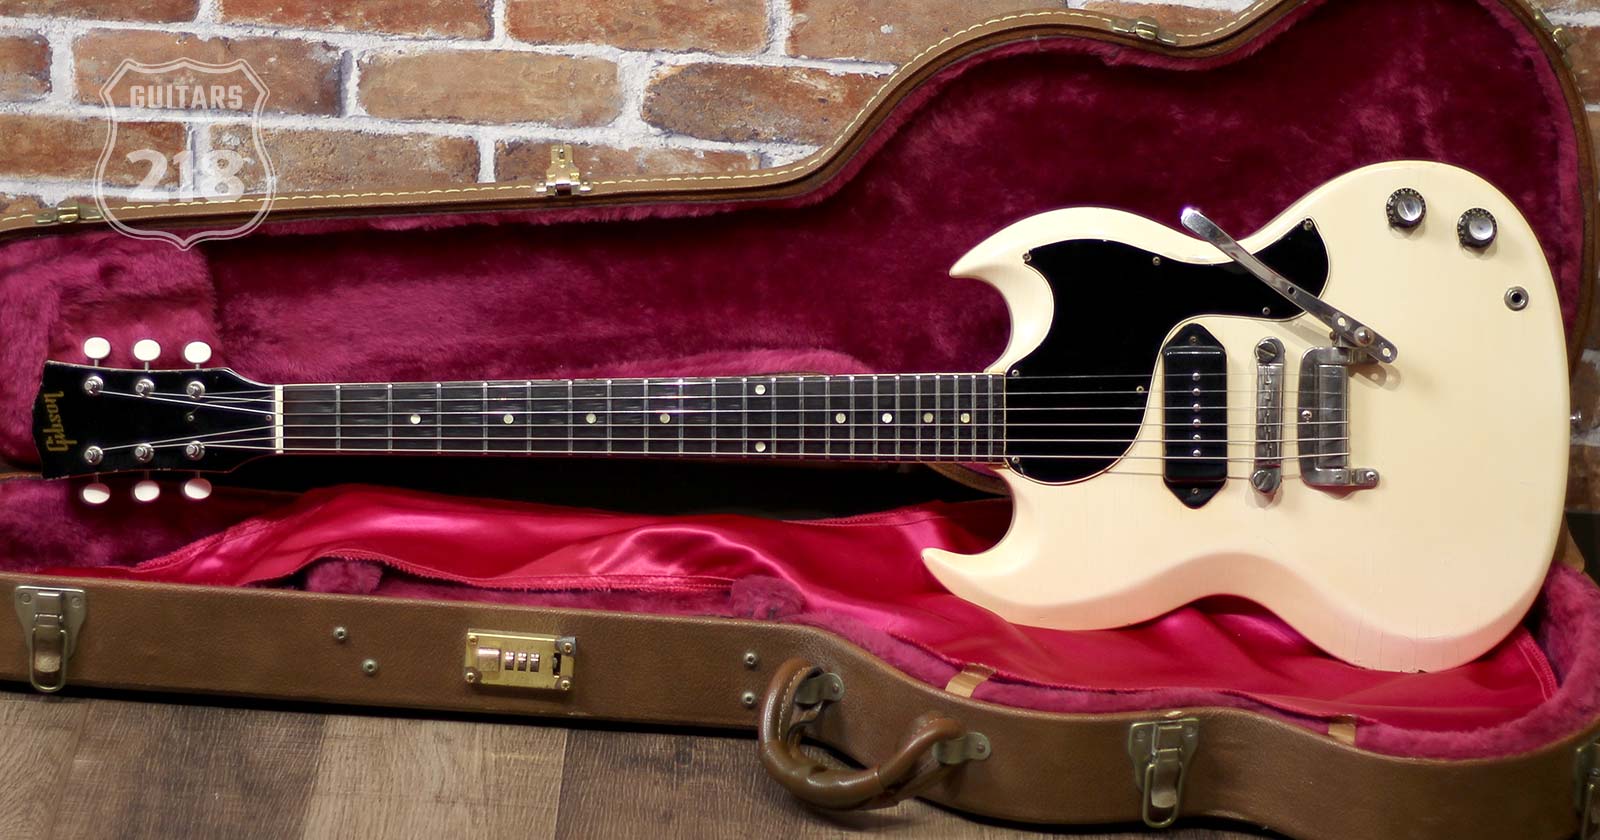 Gibson 1963 SG Junior Polaris White Tremotone Vibrola